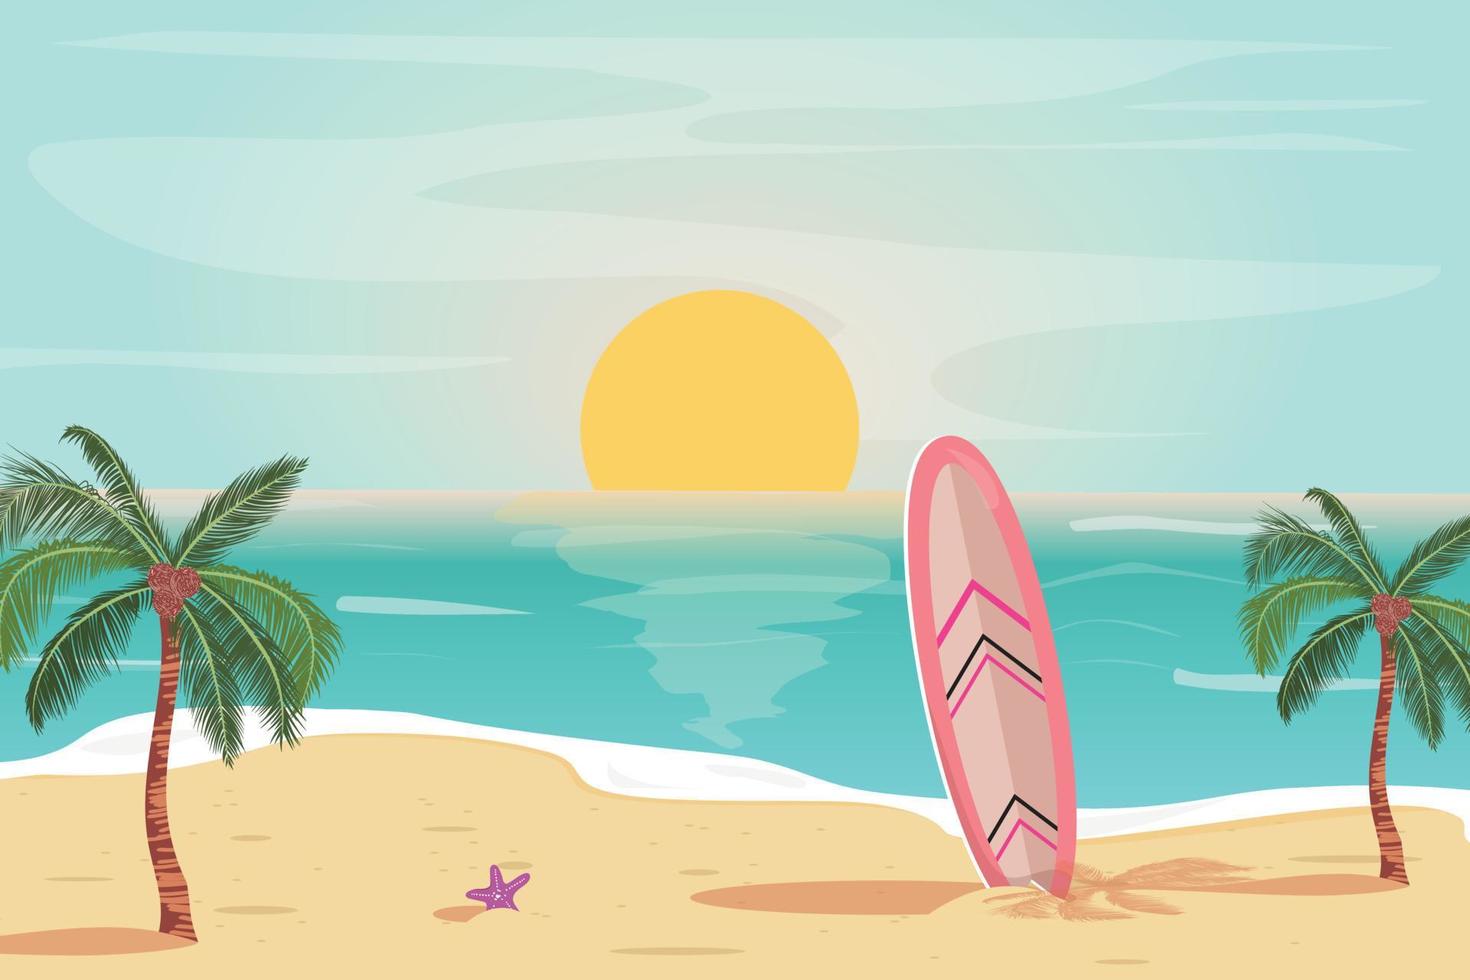 prachtige zonsondergangillustratie met strand, surfplank, palmbomen en zeester. zomer tropische zonsondergang voor kaarten, banners, achtergronden. reizen, vakantie concept illustratie. vector